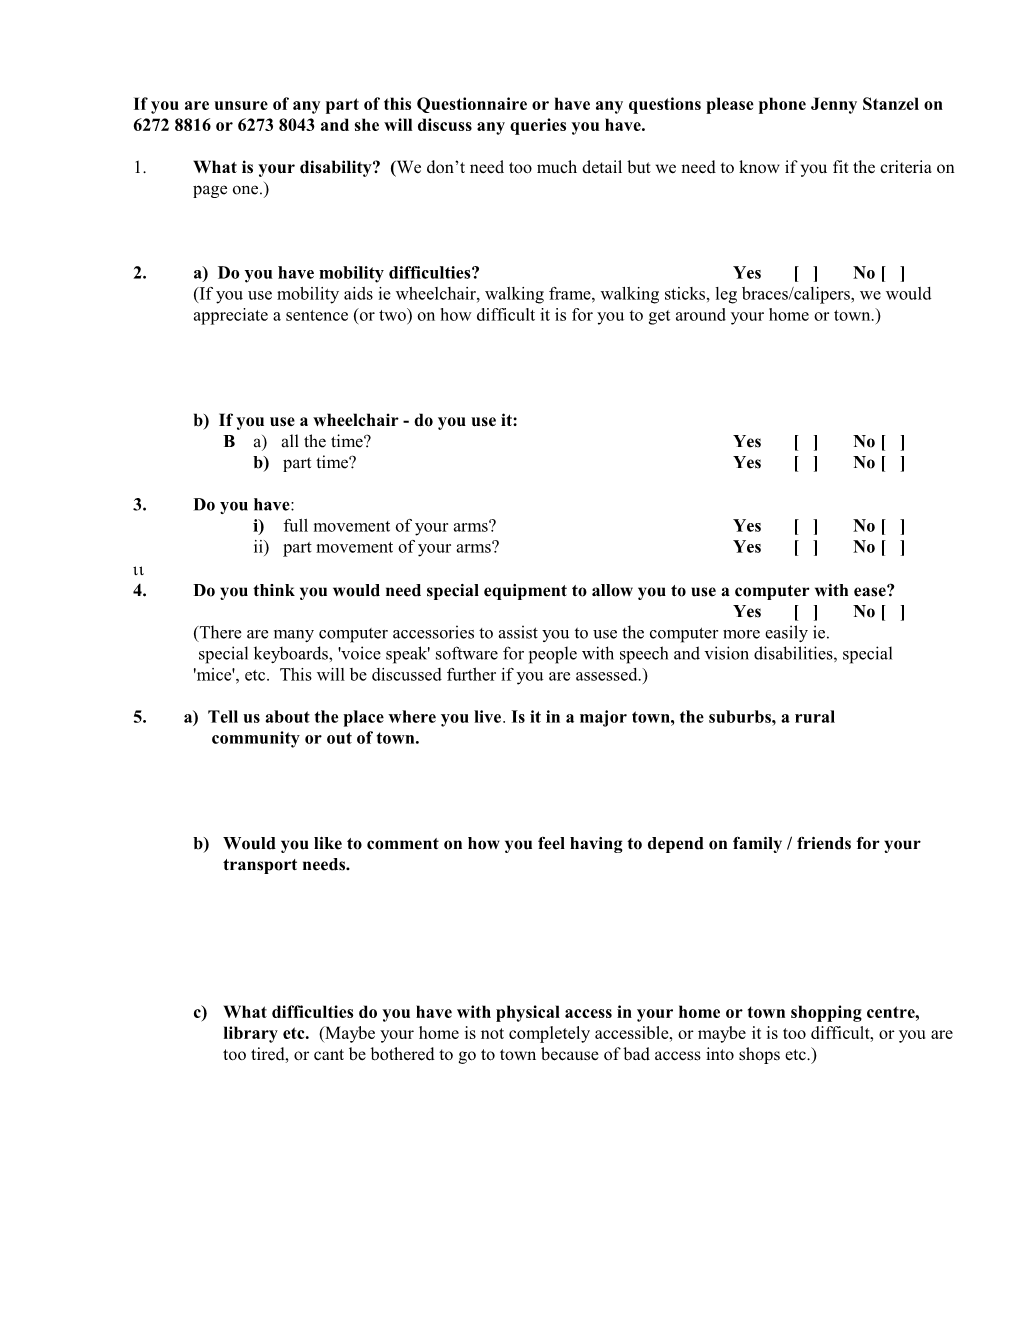 Attachment 1 - Questionnaire (HREOC - 8-11-99)